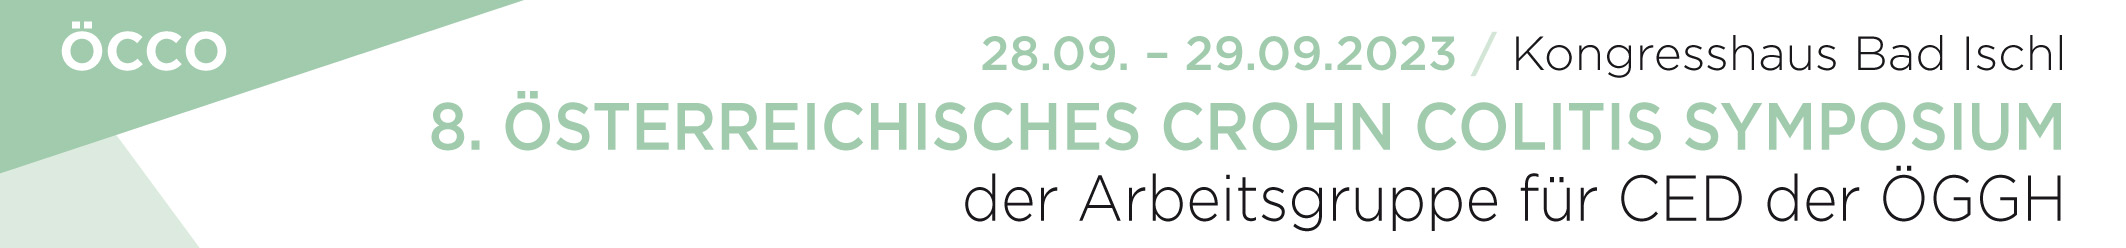 8. Österreichisches Crohn Colitis Symposium der Arbeitsgruppe für CED der ÖGGH